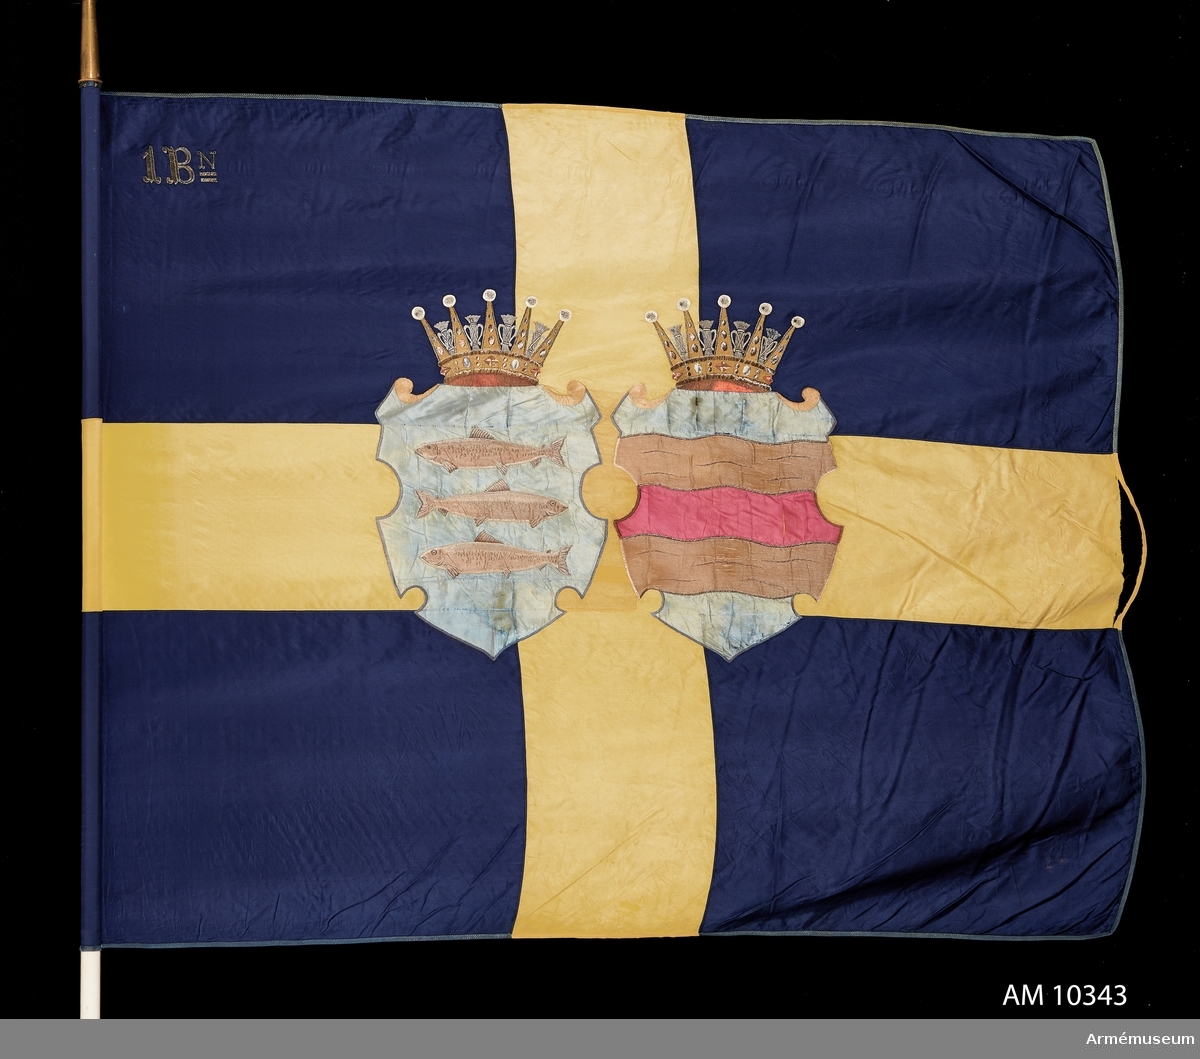 Duk av blått och gult siden med Västernorrlands heraldiska vapen bestående av Ångermanlands och Medelpads vapen i varsin sköld krönta med hertigkronor. I övre stångsidan broderat 1 Bn (första bataljonen).